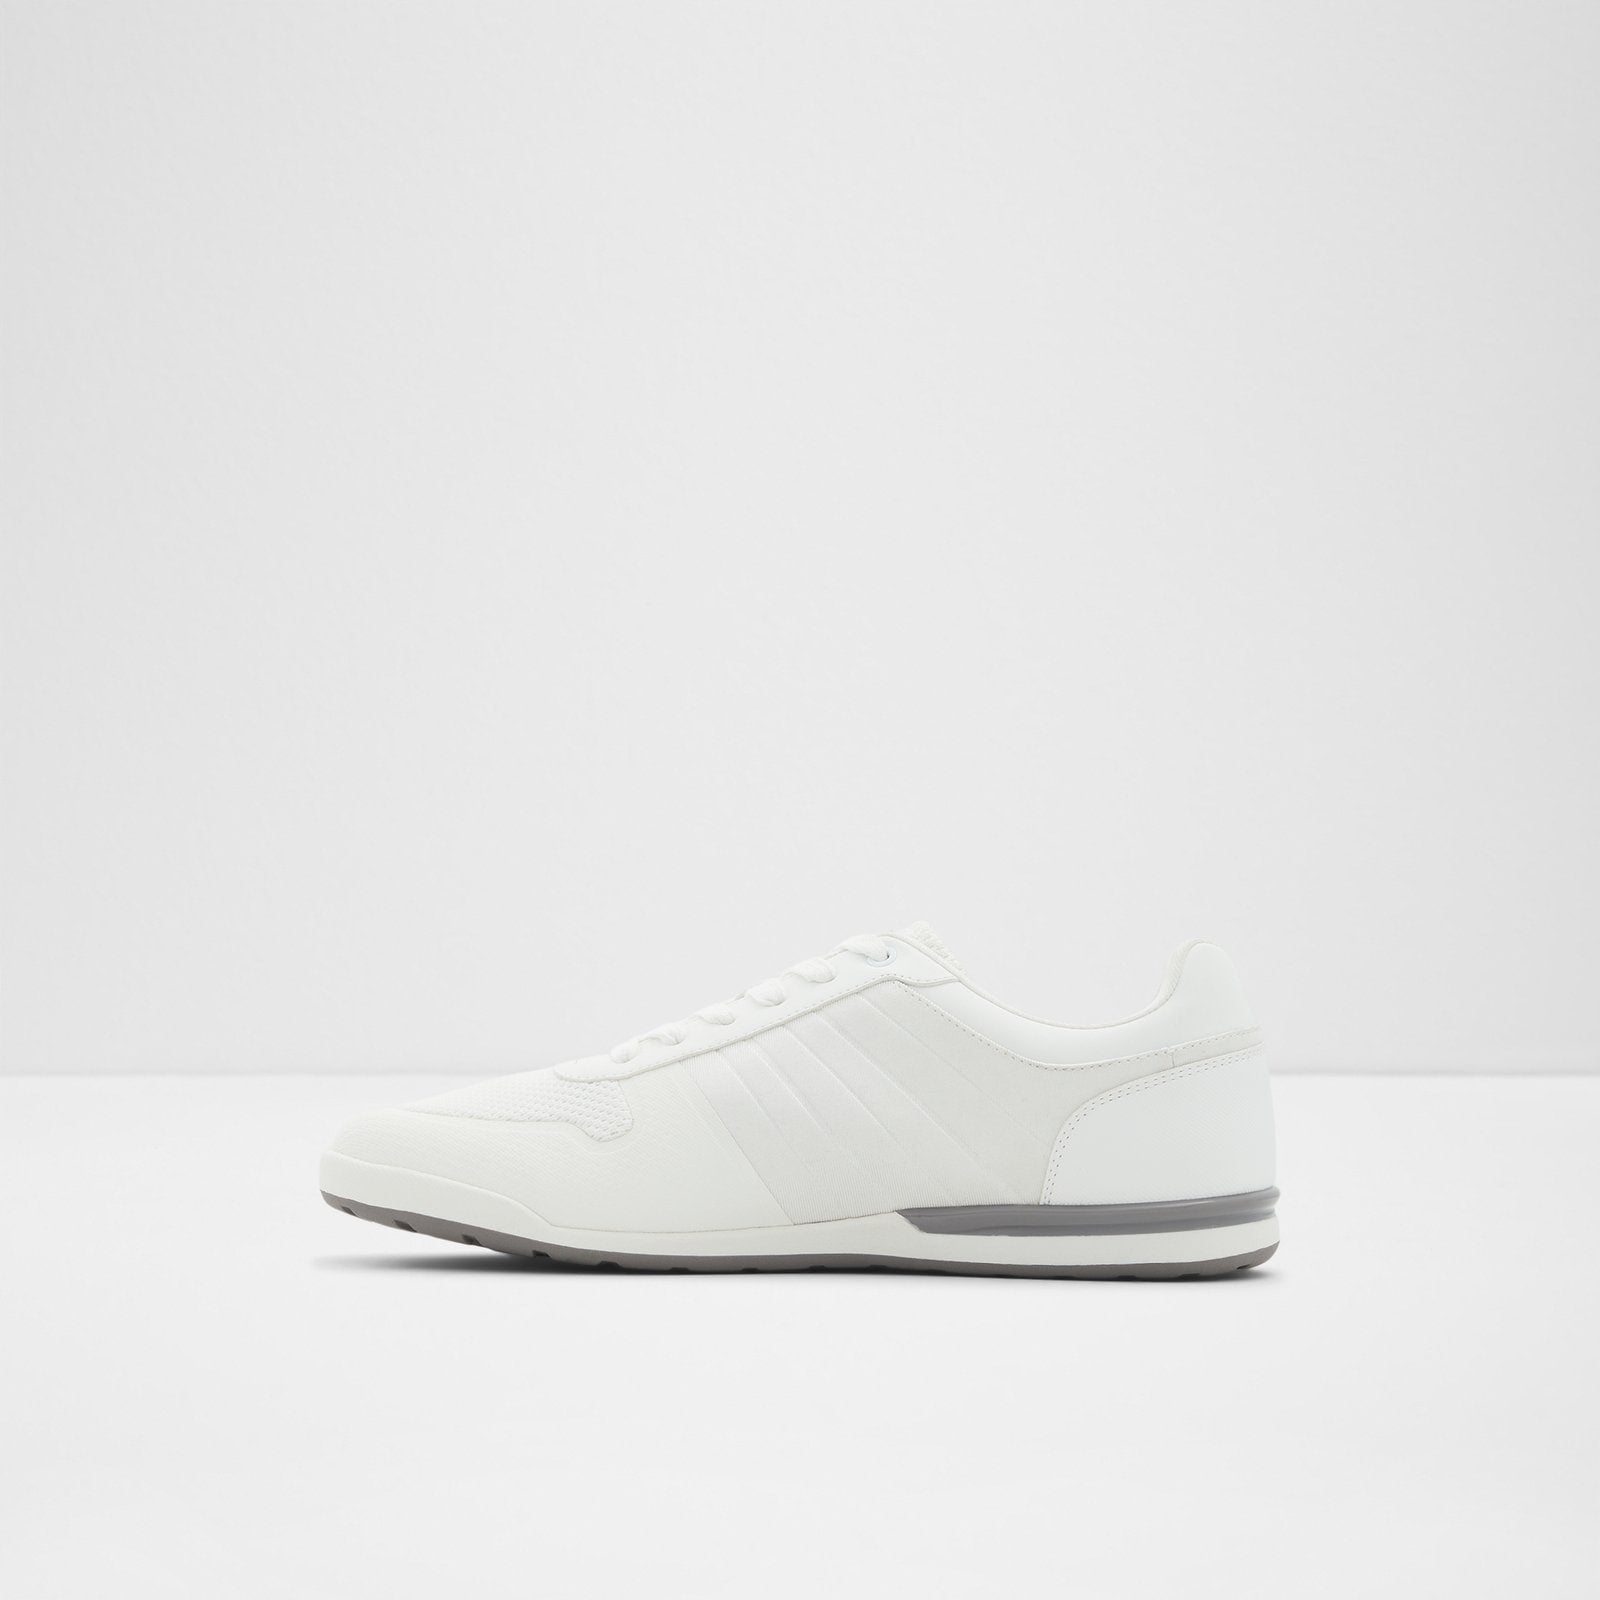 Geordy Men Shoes - White - ALDO KSA